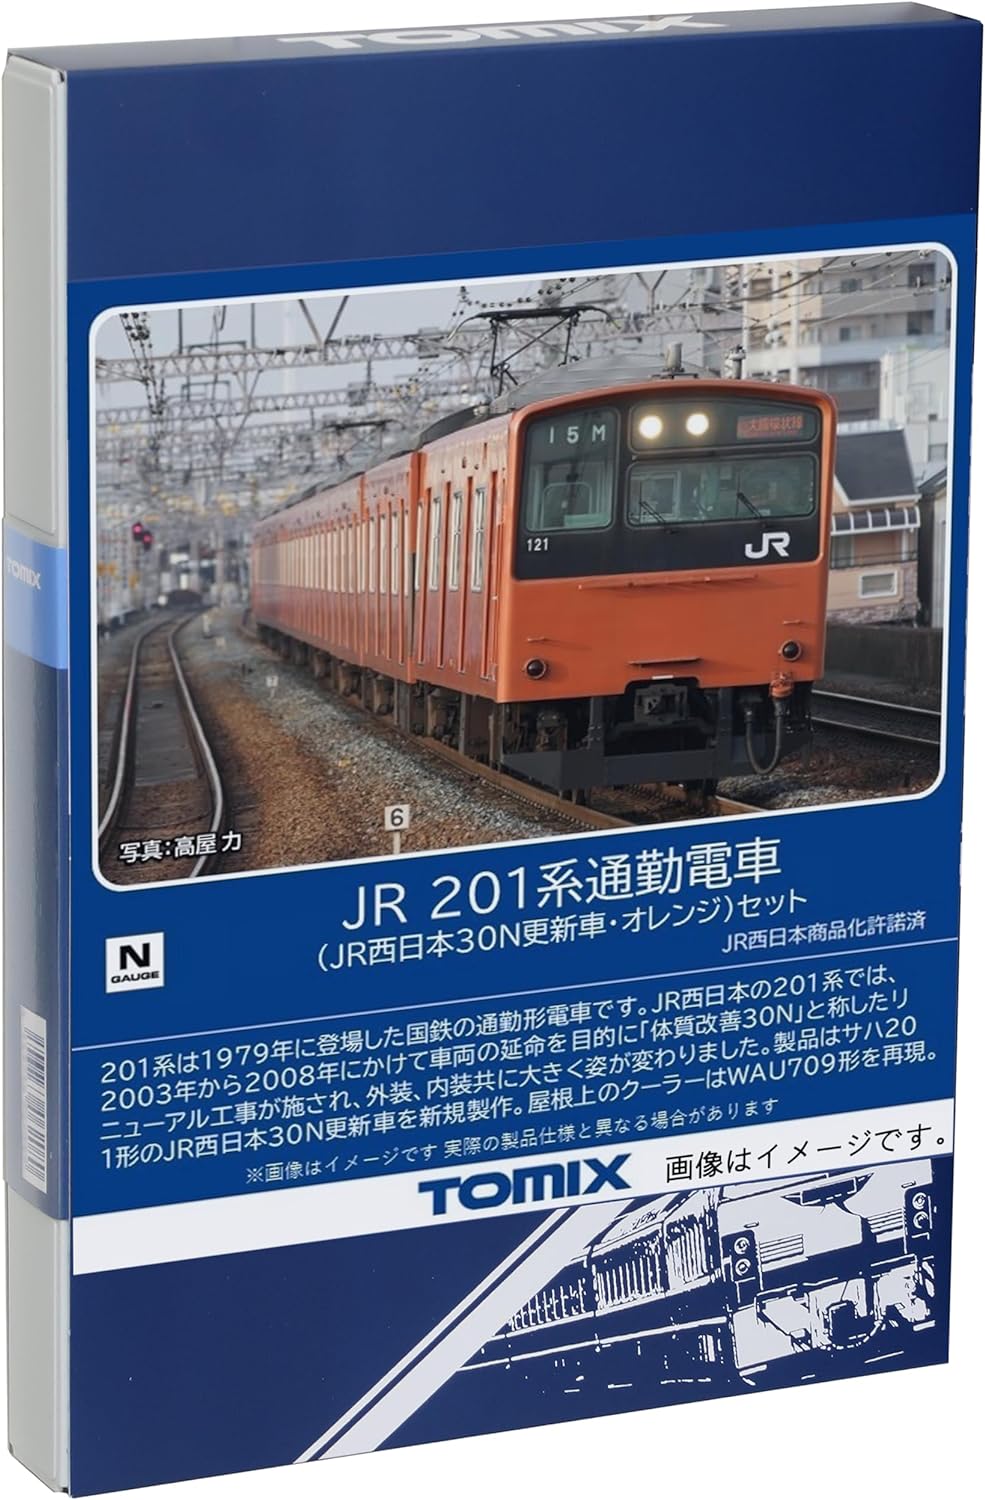 TOMIX 98843 N Gauge JR 201 Series JR West Japan 30N Updated Car, Orange Set, Railway Model Train - BanzaiHobby